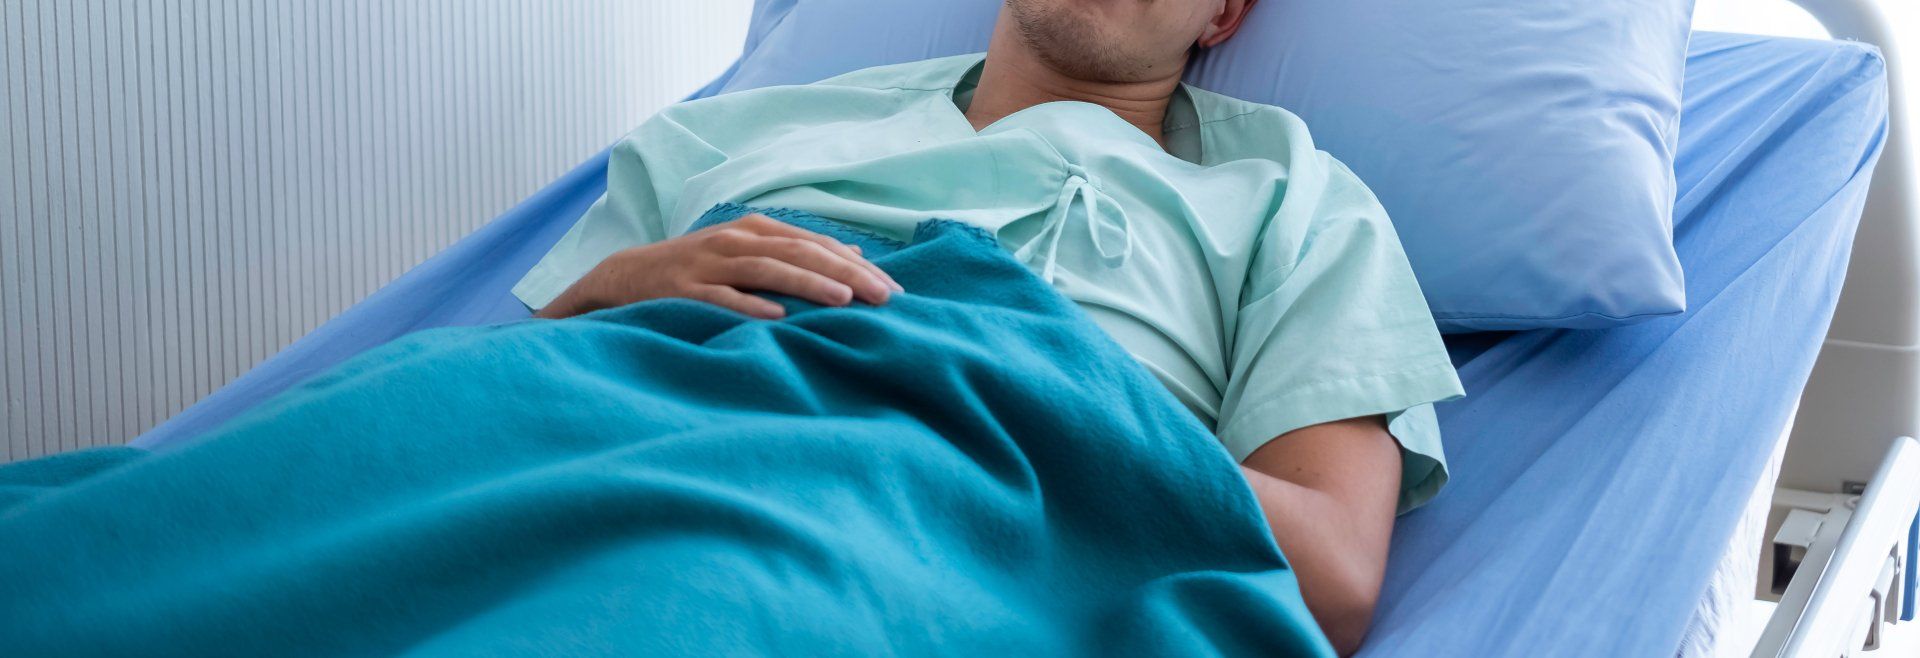 patiënt ligt op een bed met blauw beddengoed  in het ziekenhuis